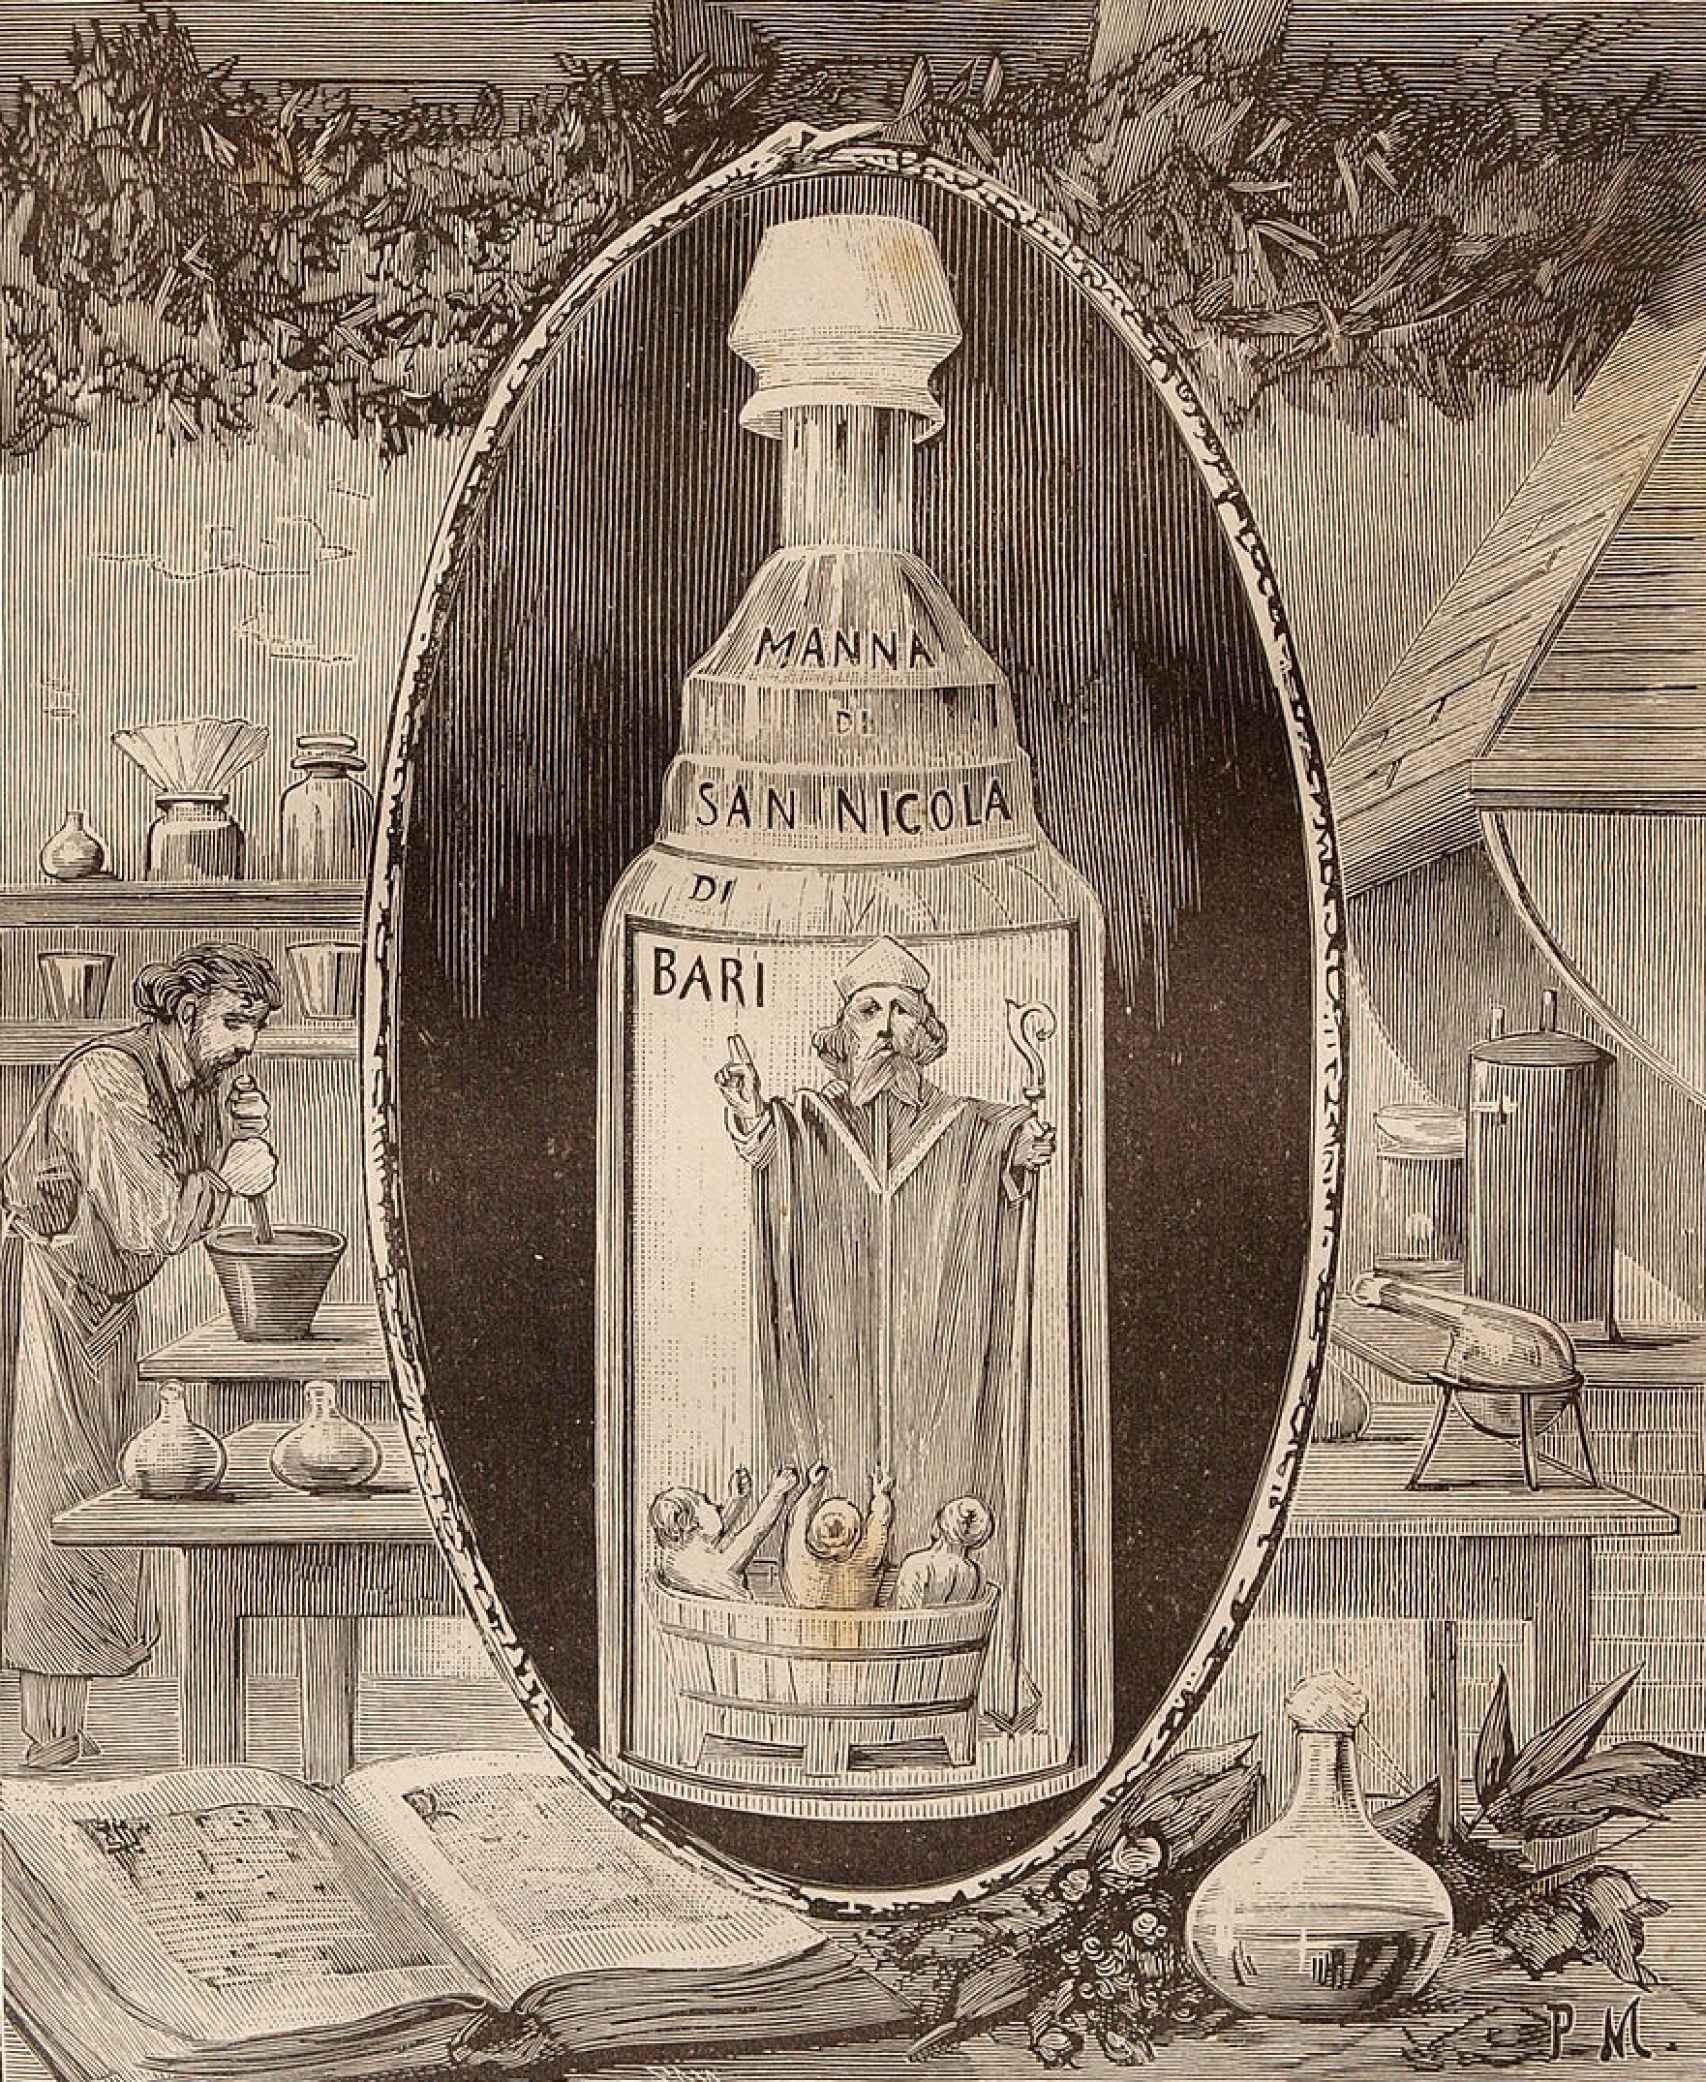 Agua tofana o manna di San Nicola, nombres con los que se designa la bebida inventada por Giulia Tofana.